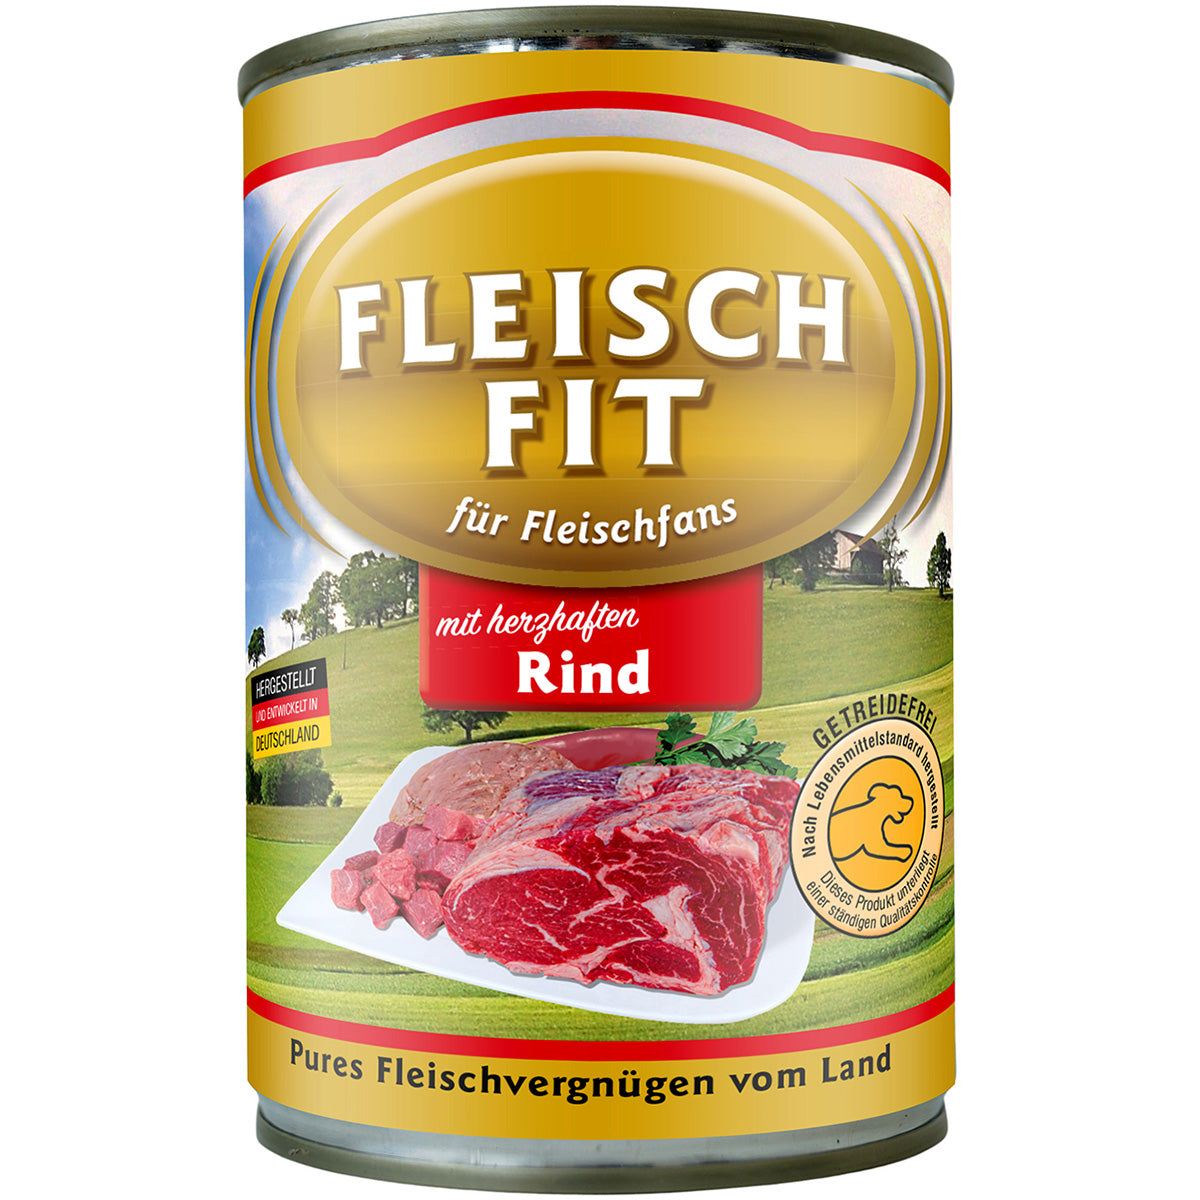 FleischFit mit Rind, 400g